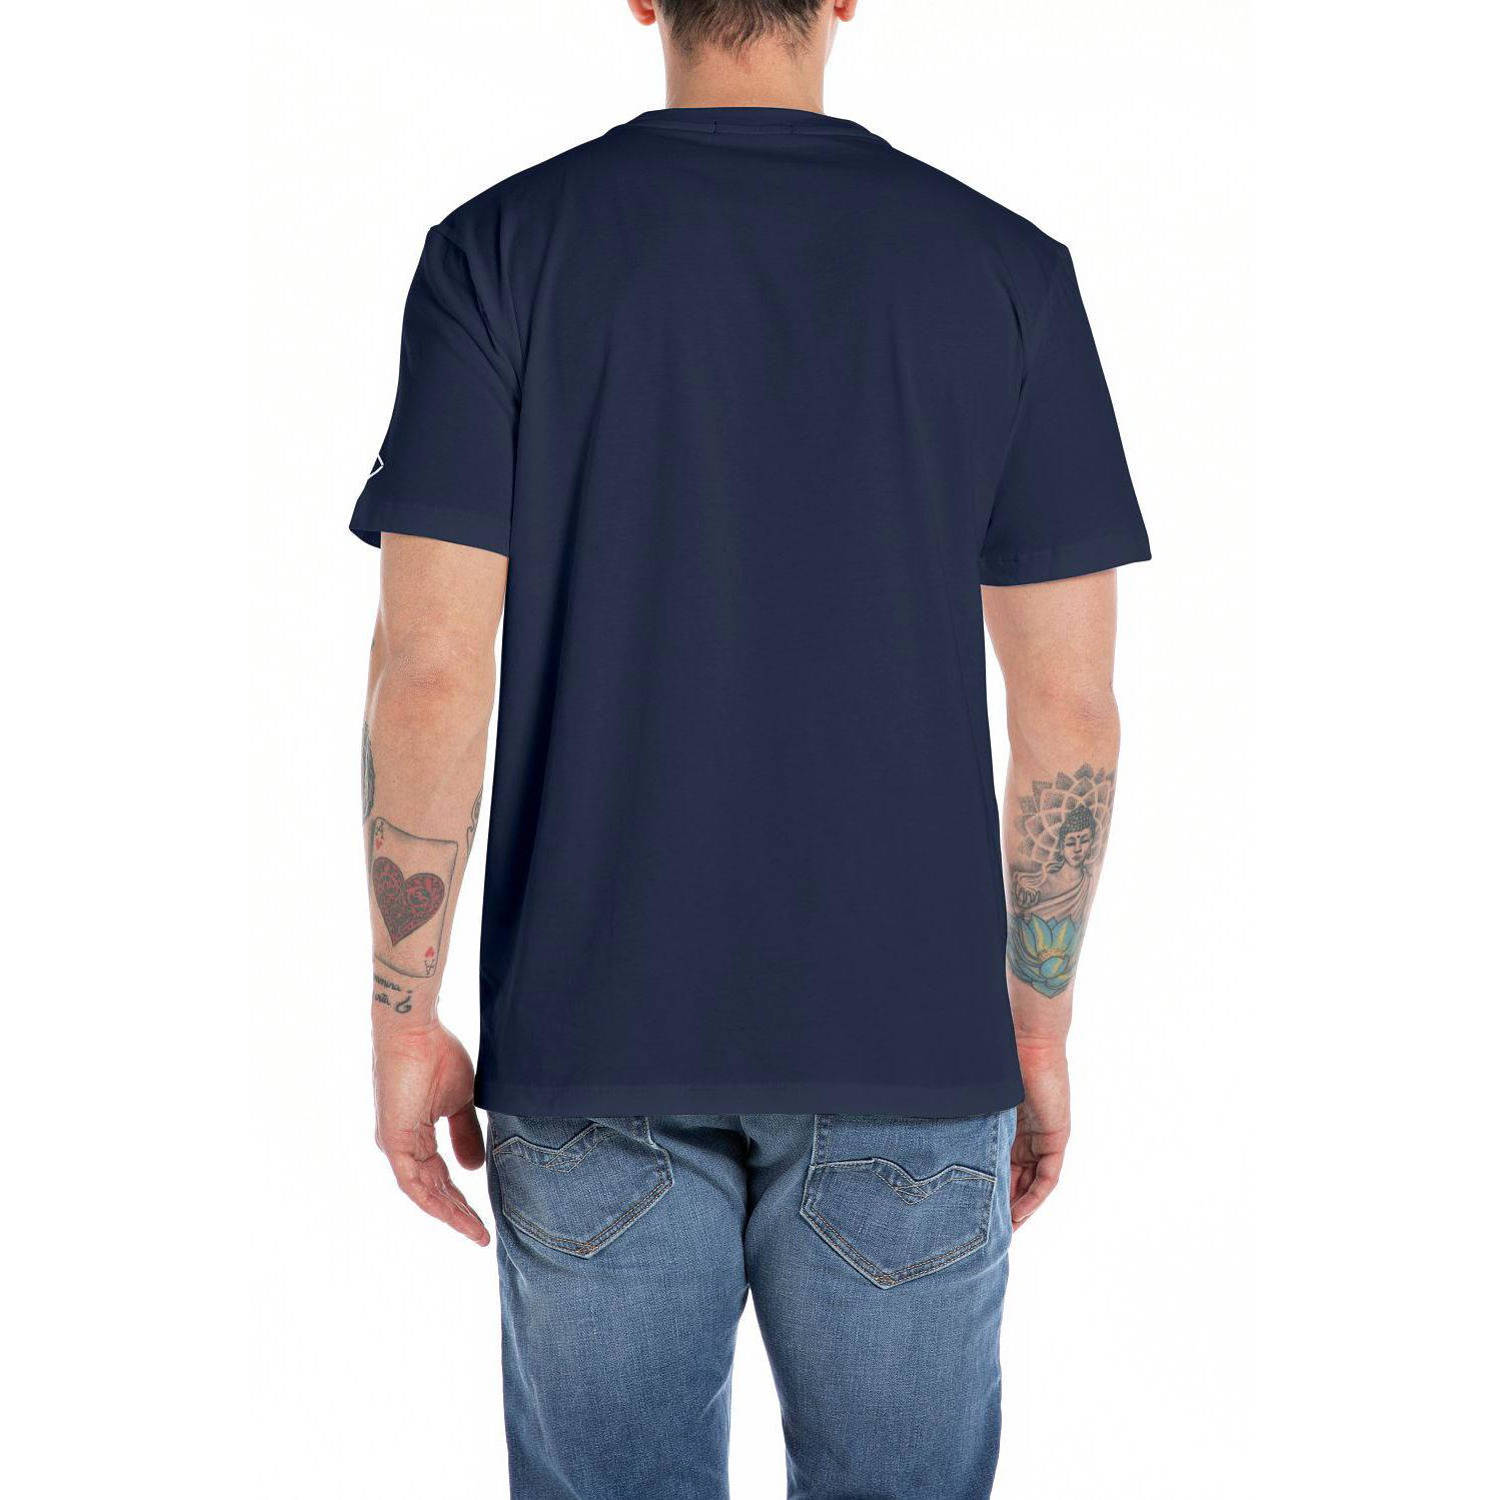 REPLAY T-shirt met logo indigo blue